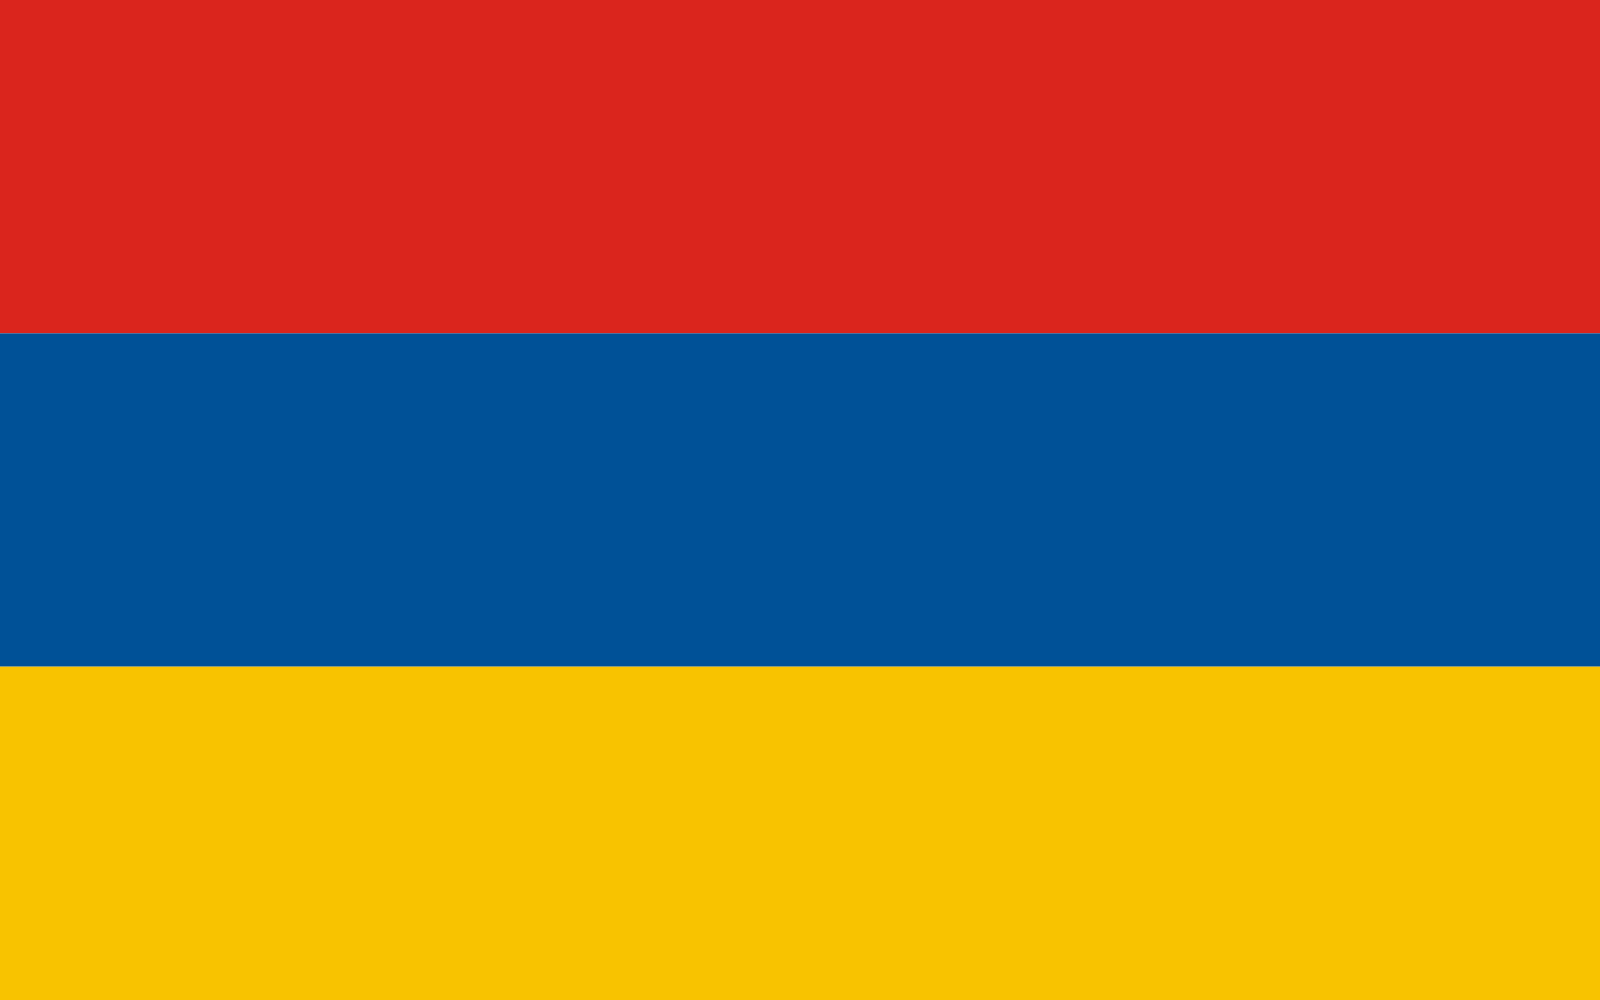 Флаг синий оранжевый желтый. Флаг флаг Армении. Флаг Армении в 1920. Республика Армения флаг. Красно сине желтый флаг Армении.